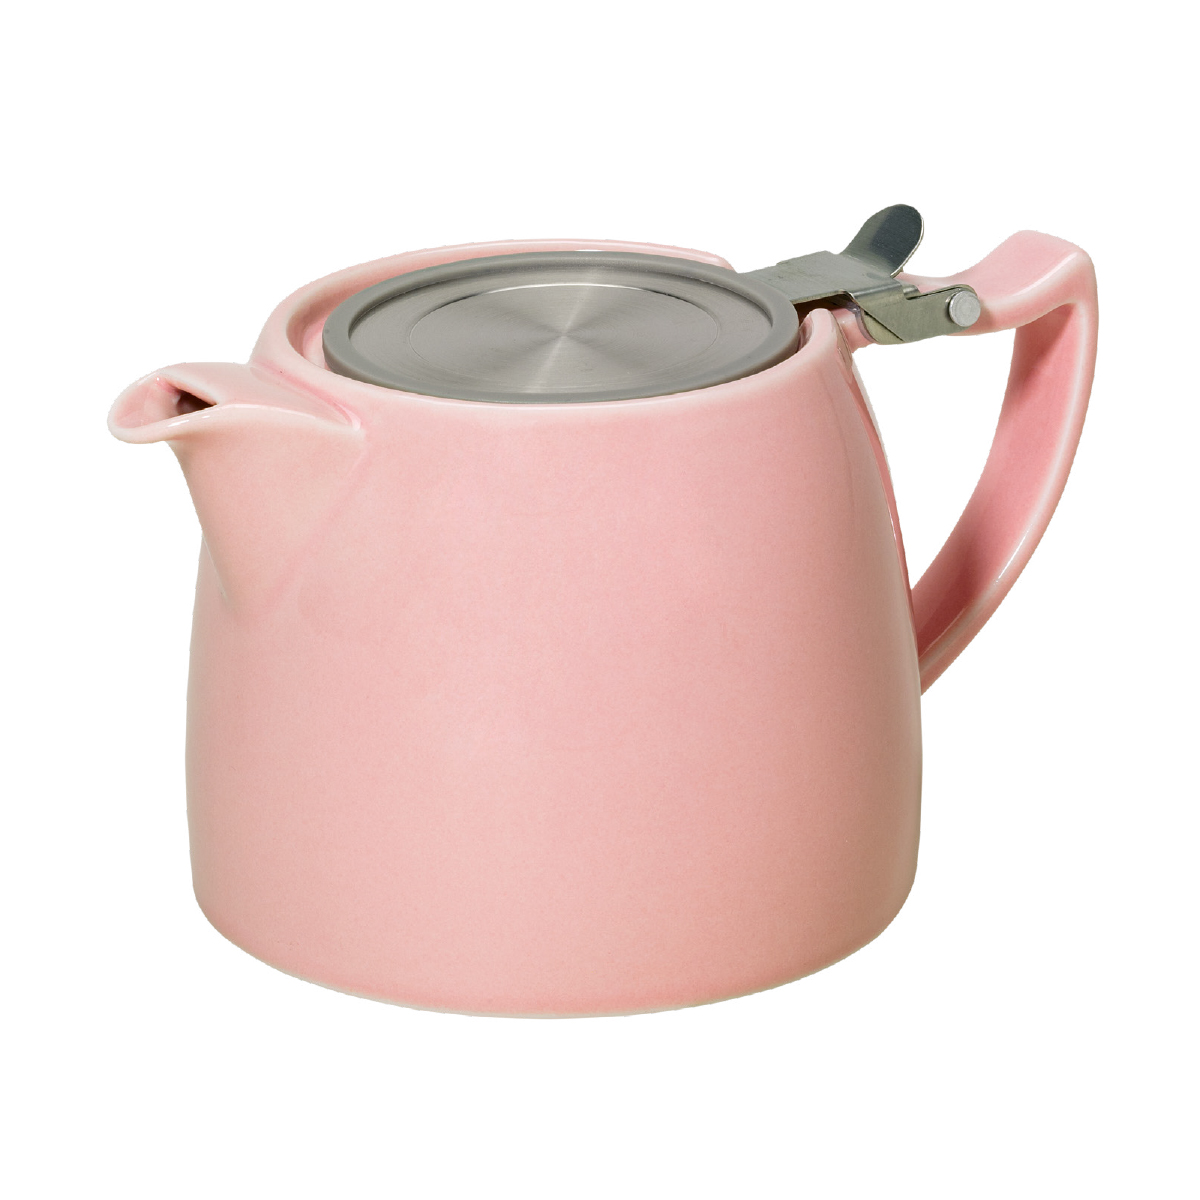 Mignon, tea pot 0.6l, light pink